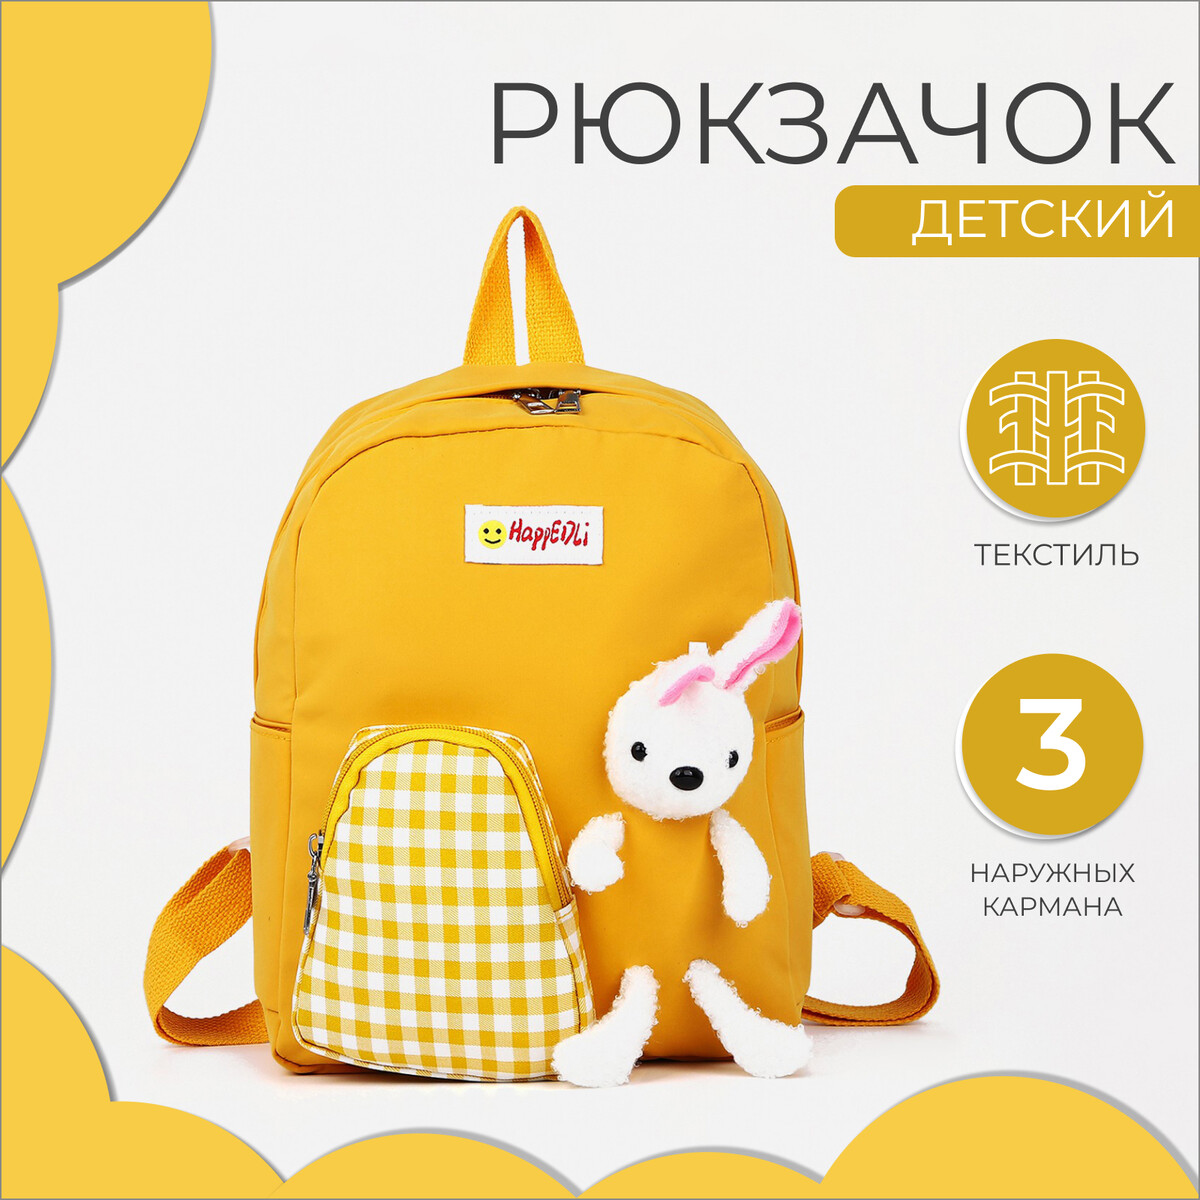 Рюкзак детский на молнии, 3 наружных кармана, цвет желтый рюкзак детский на молнии 3 наружных кармана сиреневый